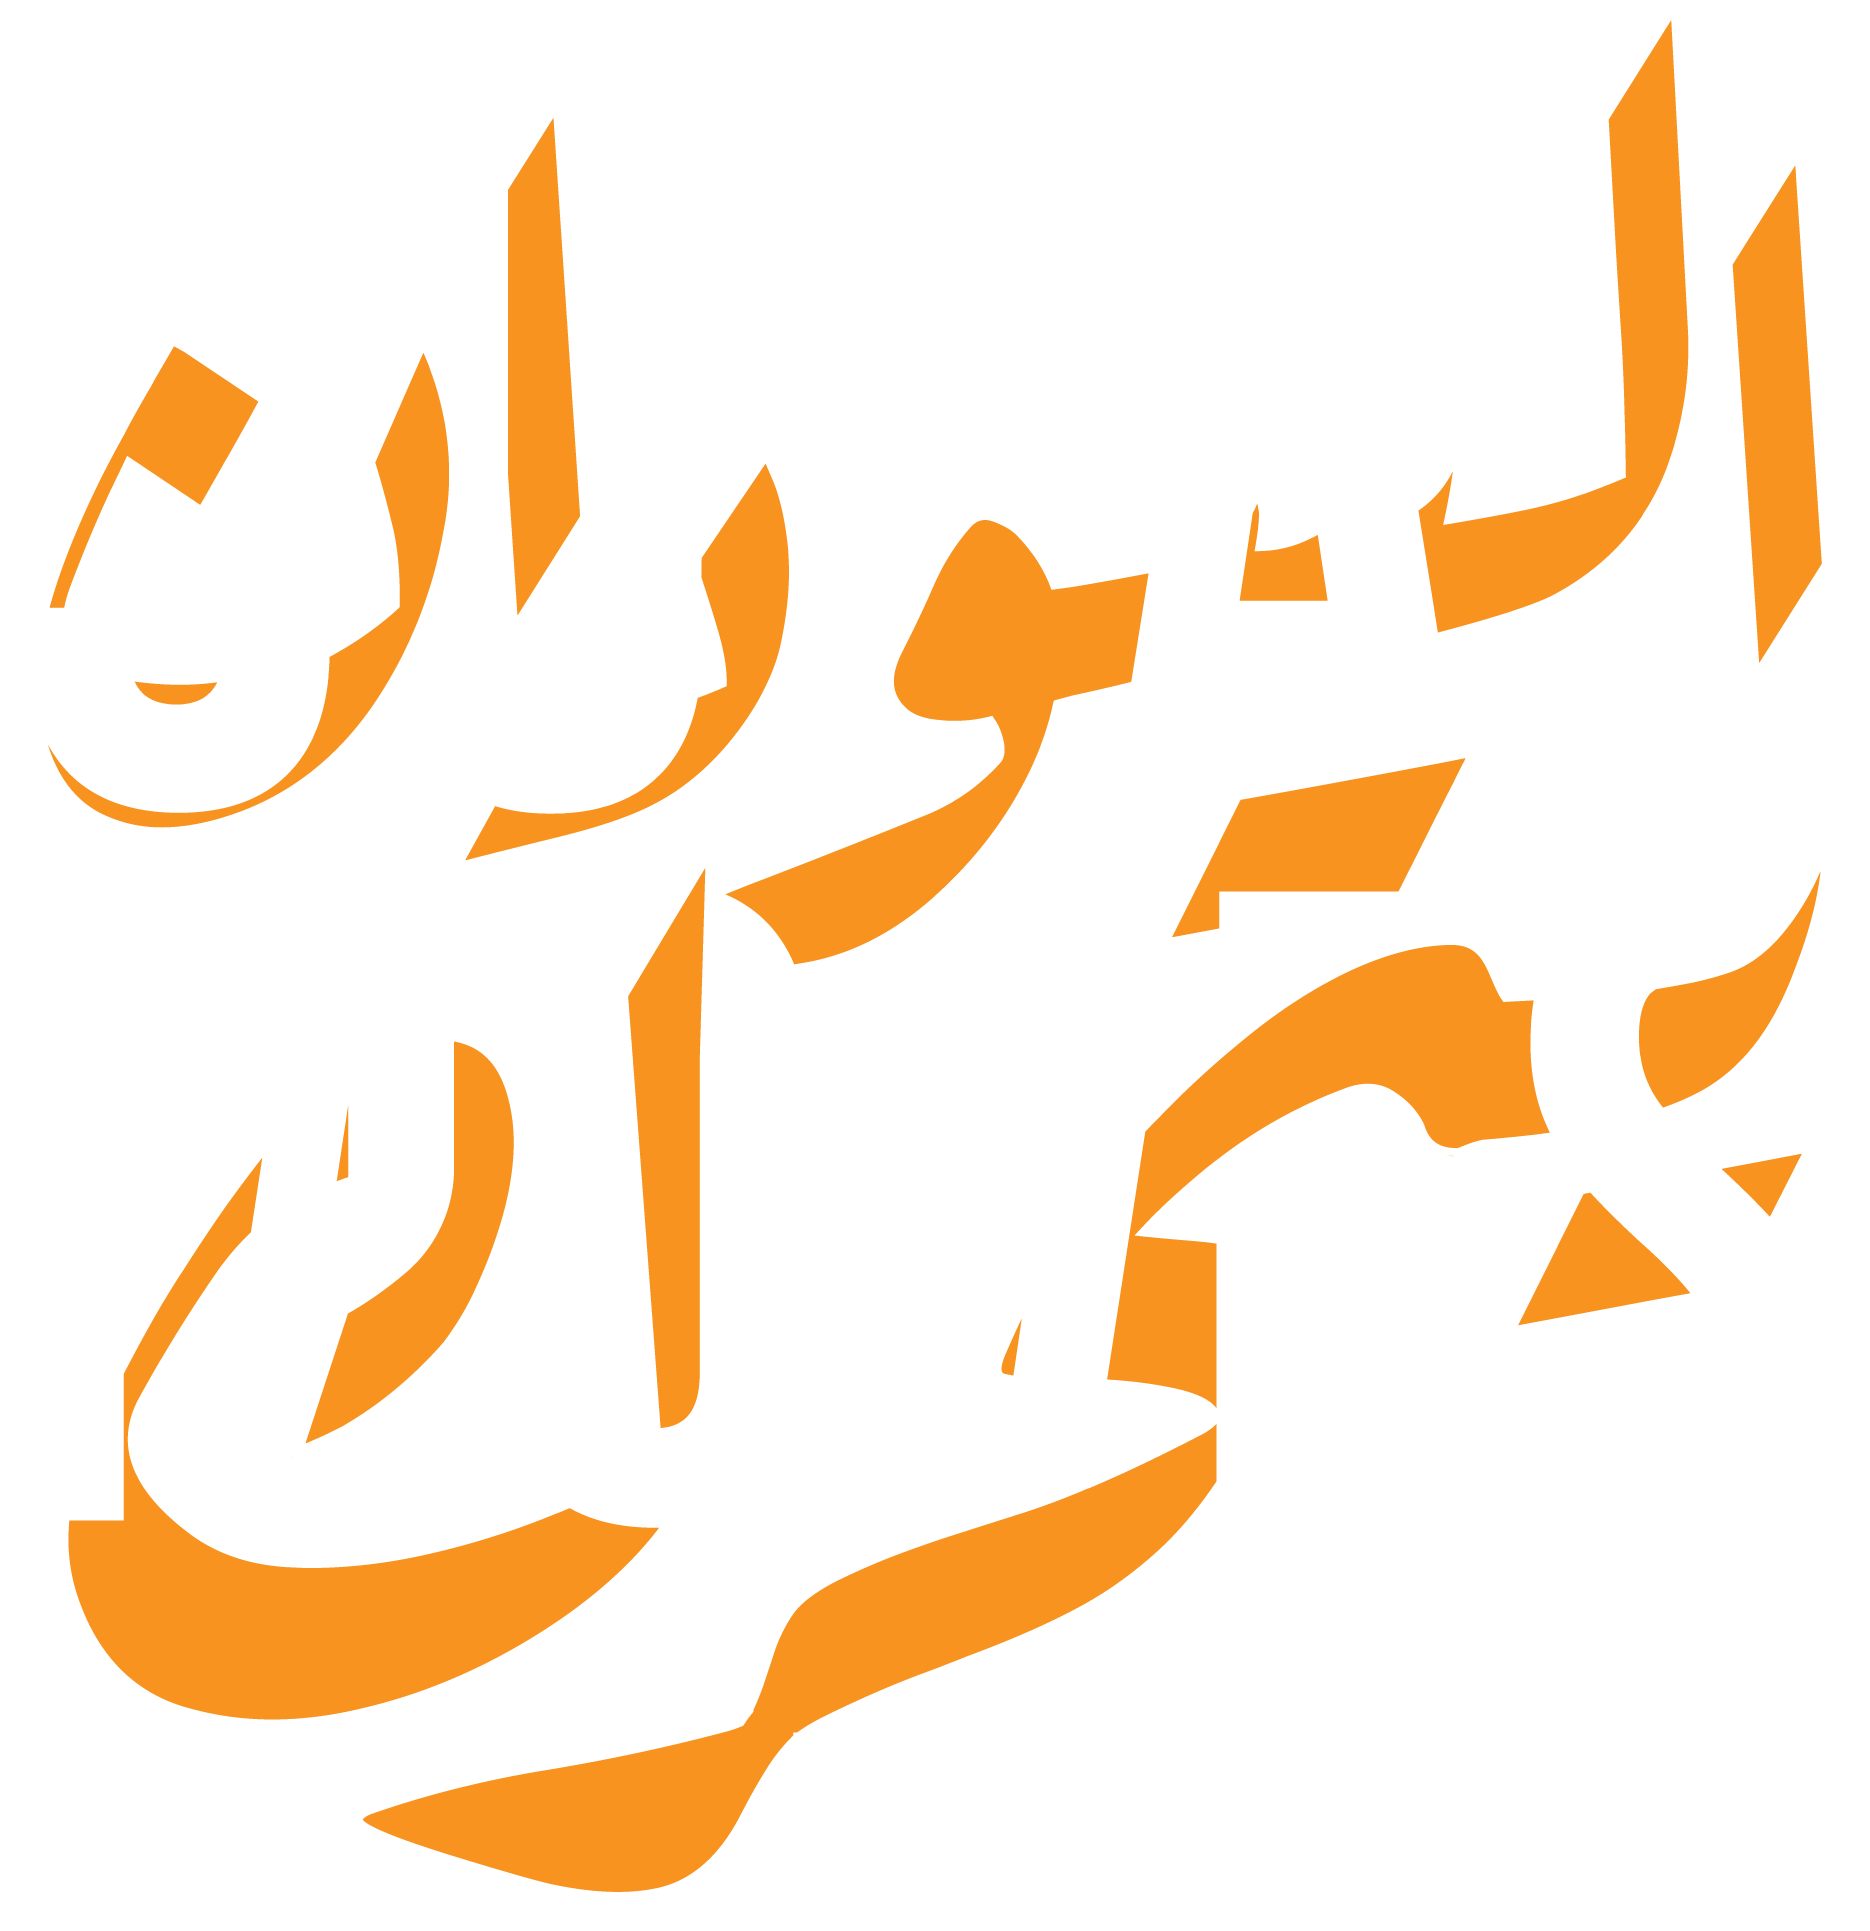 السودان يتحرك